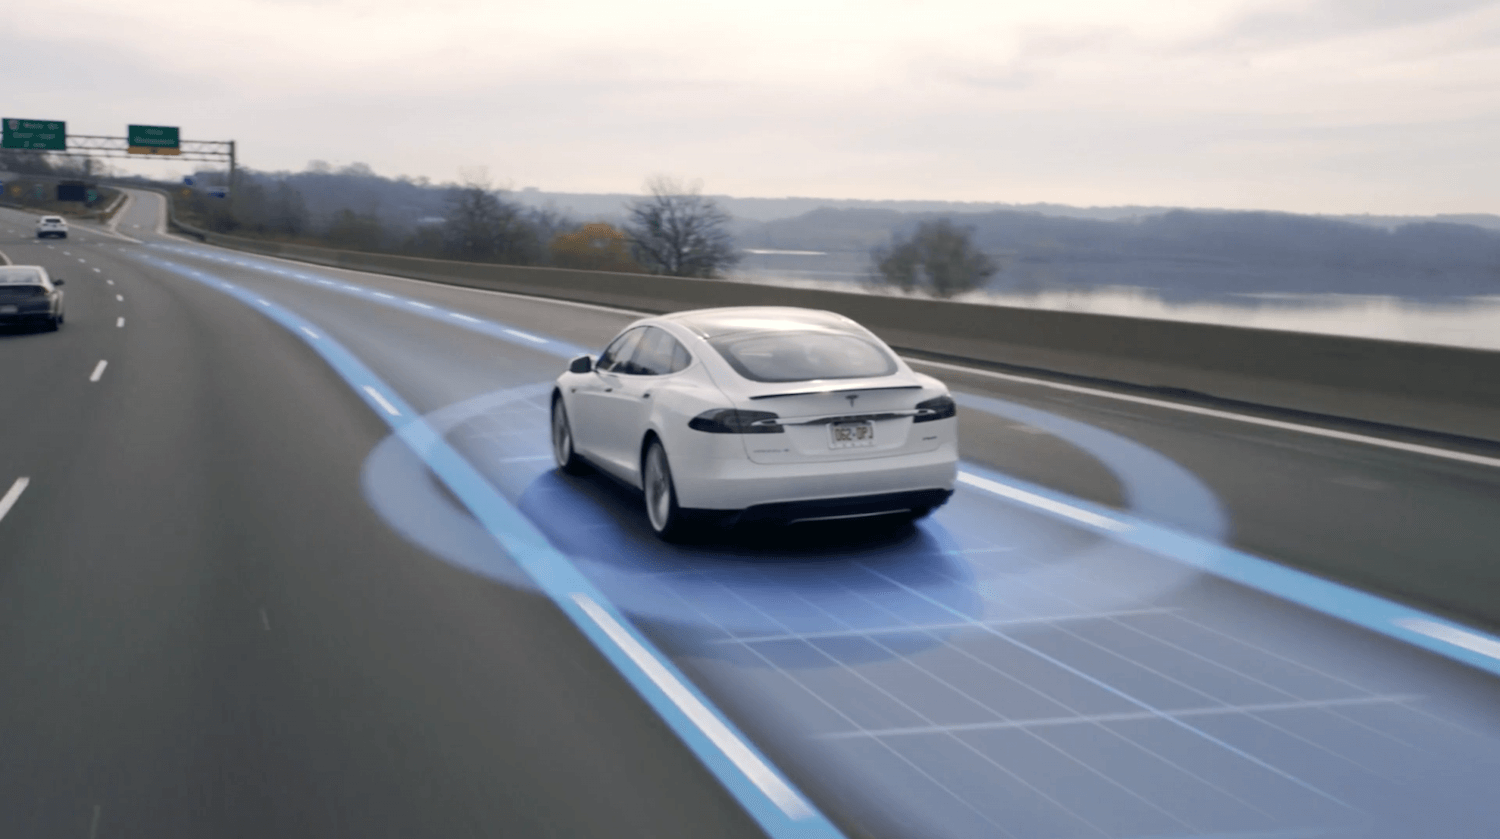 Самоуправляемые автомобили завтрашнего дня будут совершенно другими по ощущениям. Автопилот позволяет Tesla самостоятельно добраться. Фото.